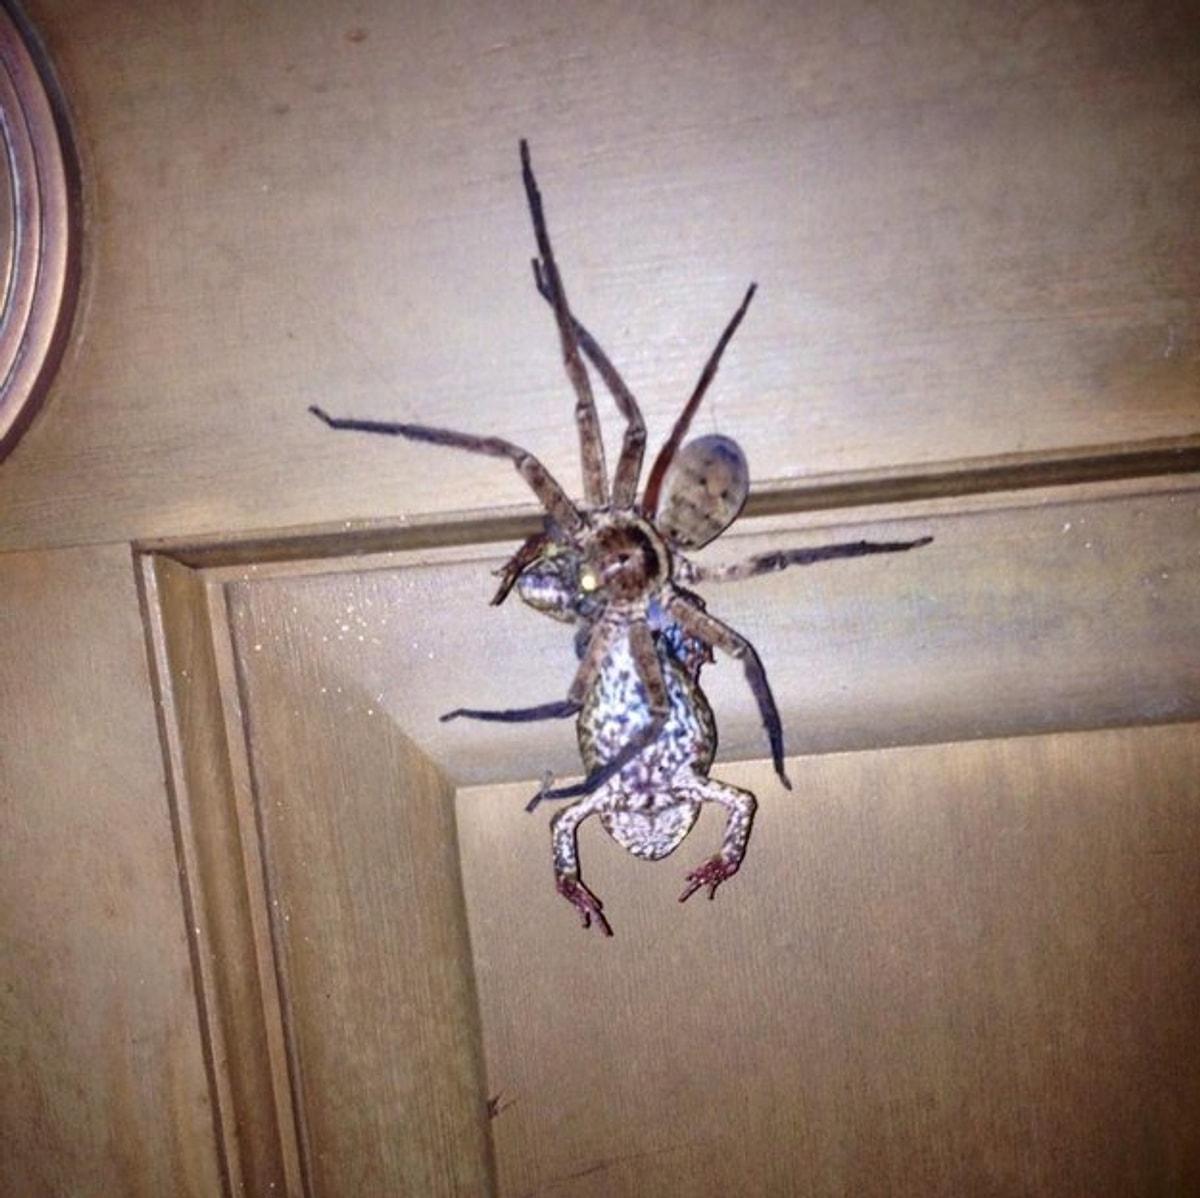 Спайдер туалет. Насекомые Австралии. Огромный паук на потолке. Австралия пауки в доме.